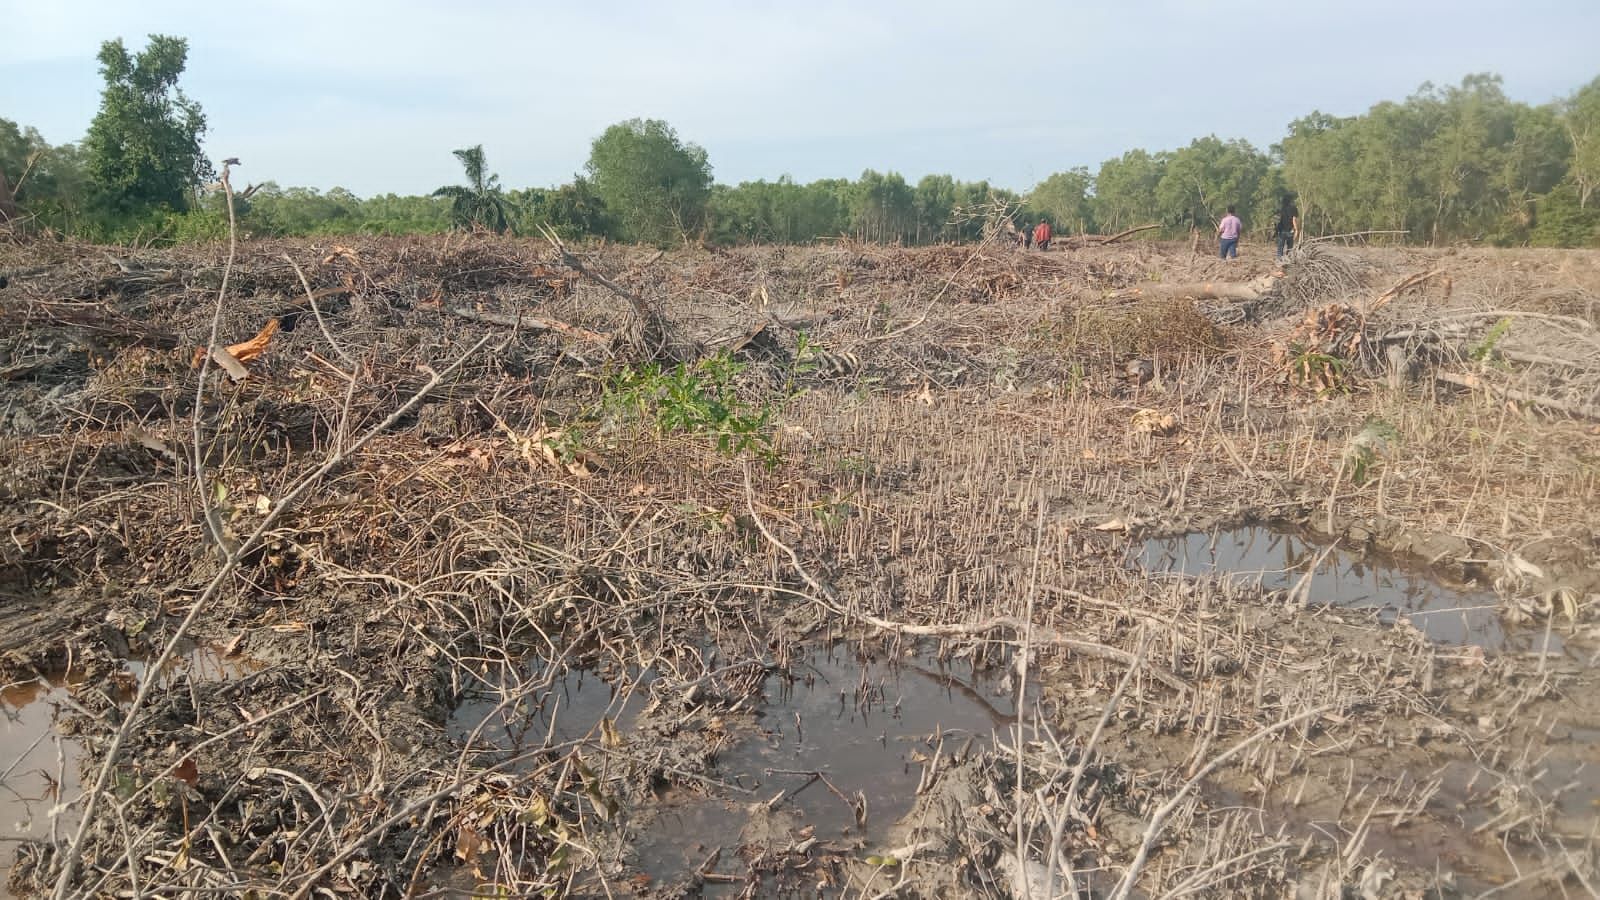 Penanganan Kasus Kerusakan Hutan Mangrove di Langkat, Green Justice Indonesia: Wibawa Polisi Dipertaruhkan